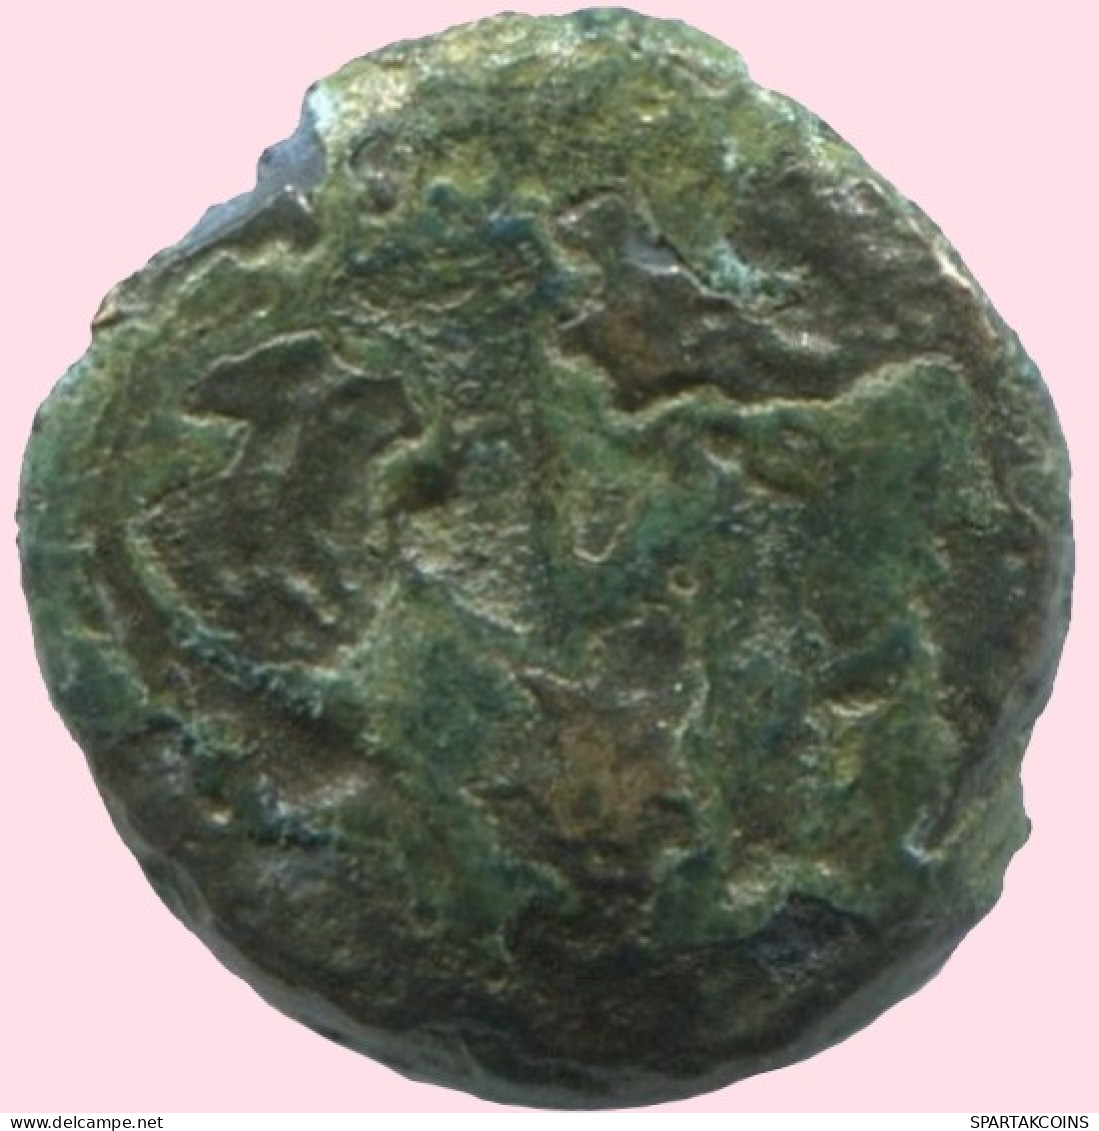 Antike Authentische Original GRIECHISCHE Münze 1.2g/10mm #ANT1689.10.D.A - Griechische Münzen